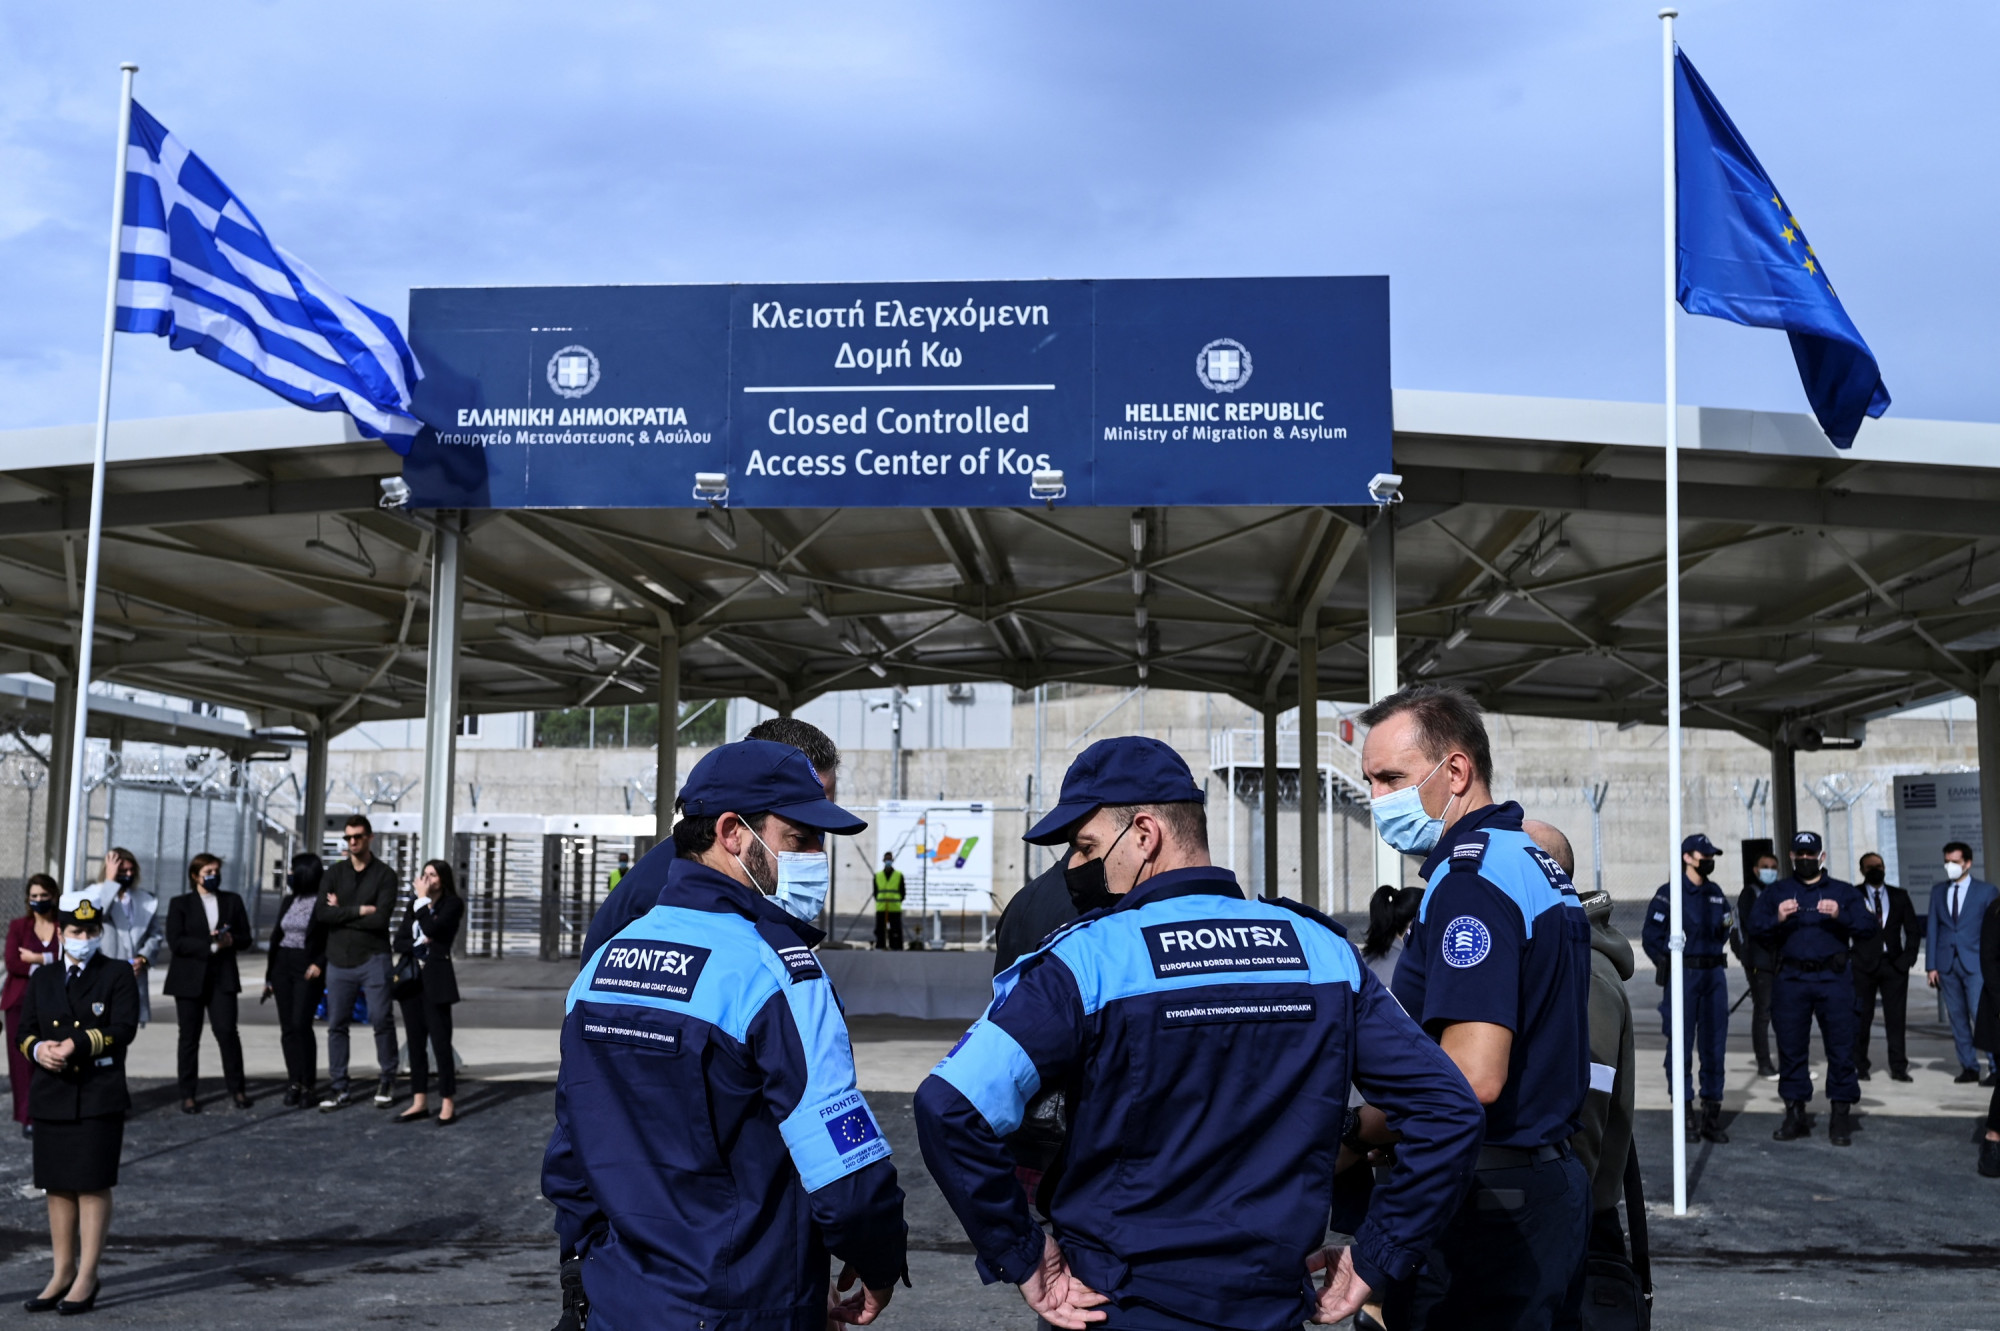 OLAF-jelentés mondja ki: visszalökik a tengerre a menedékkérőket Görögországból, aztán eltüntetik a nyomokat